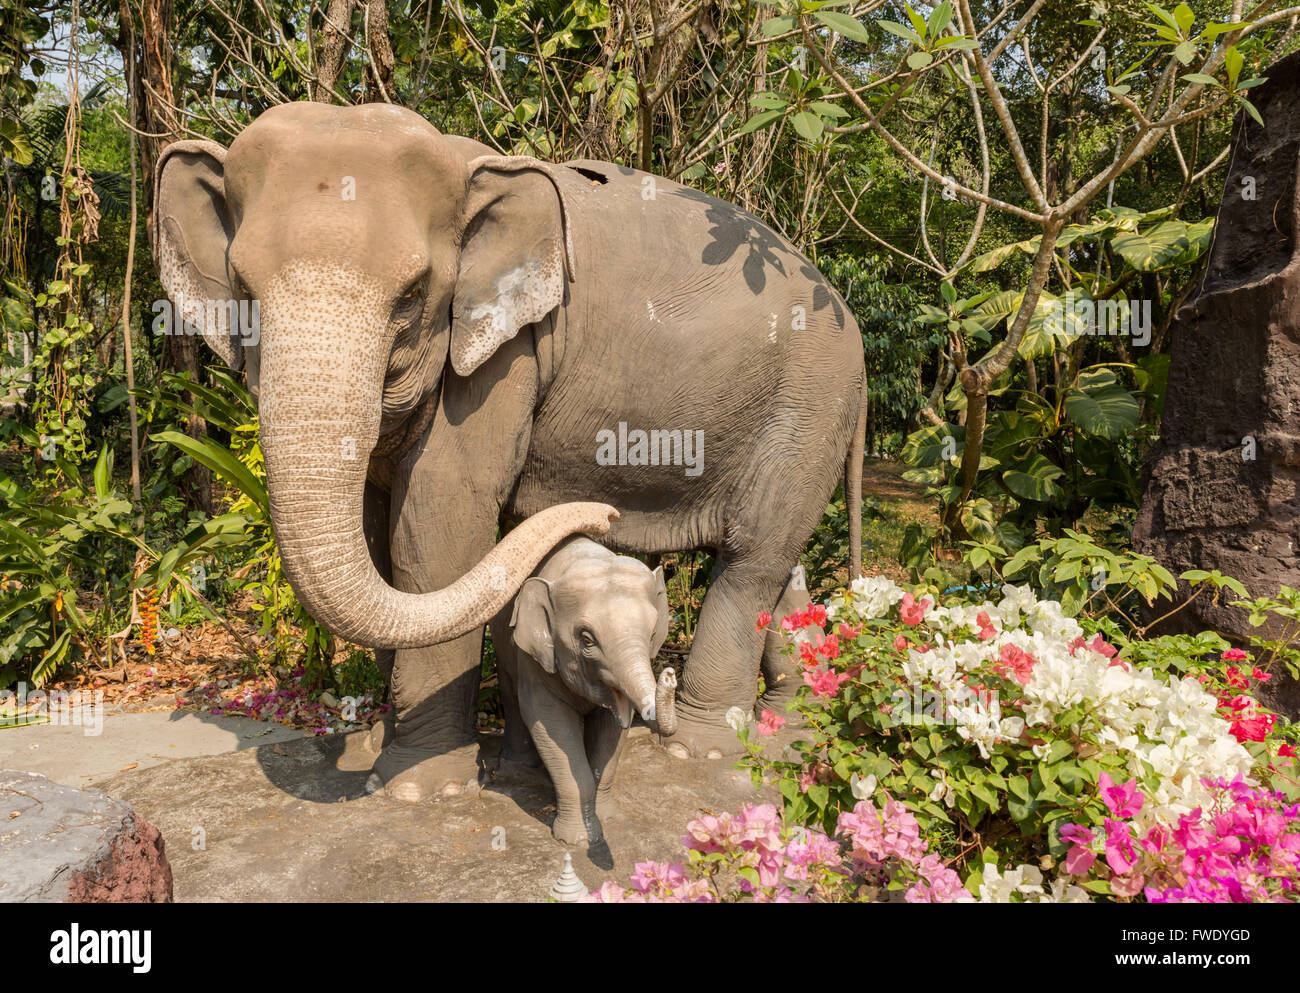 Elephant and baby elephant Stock Photo